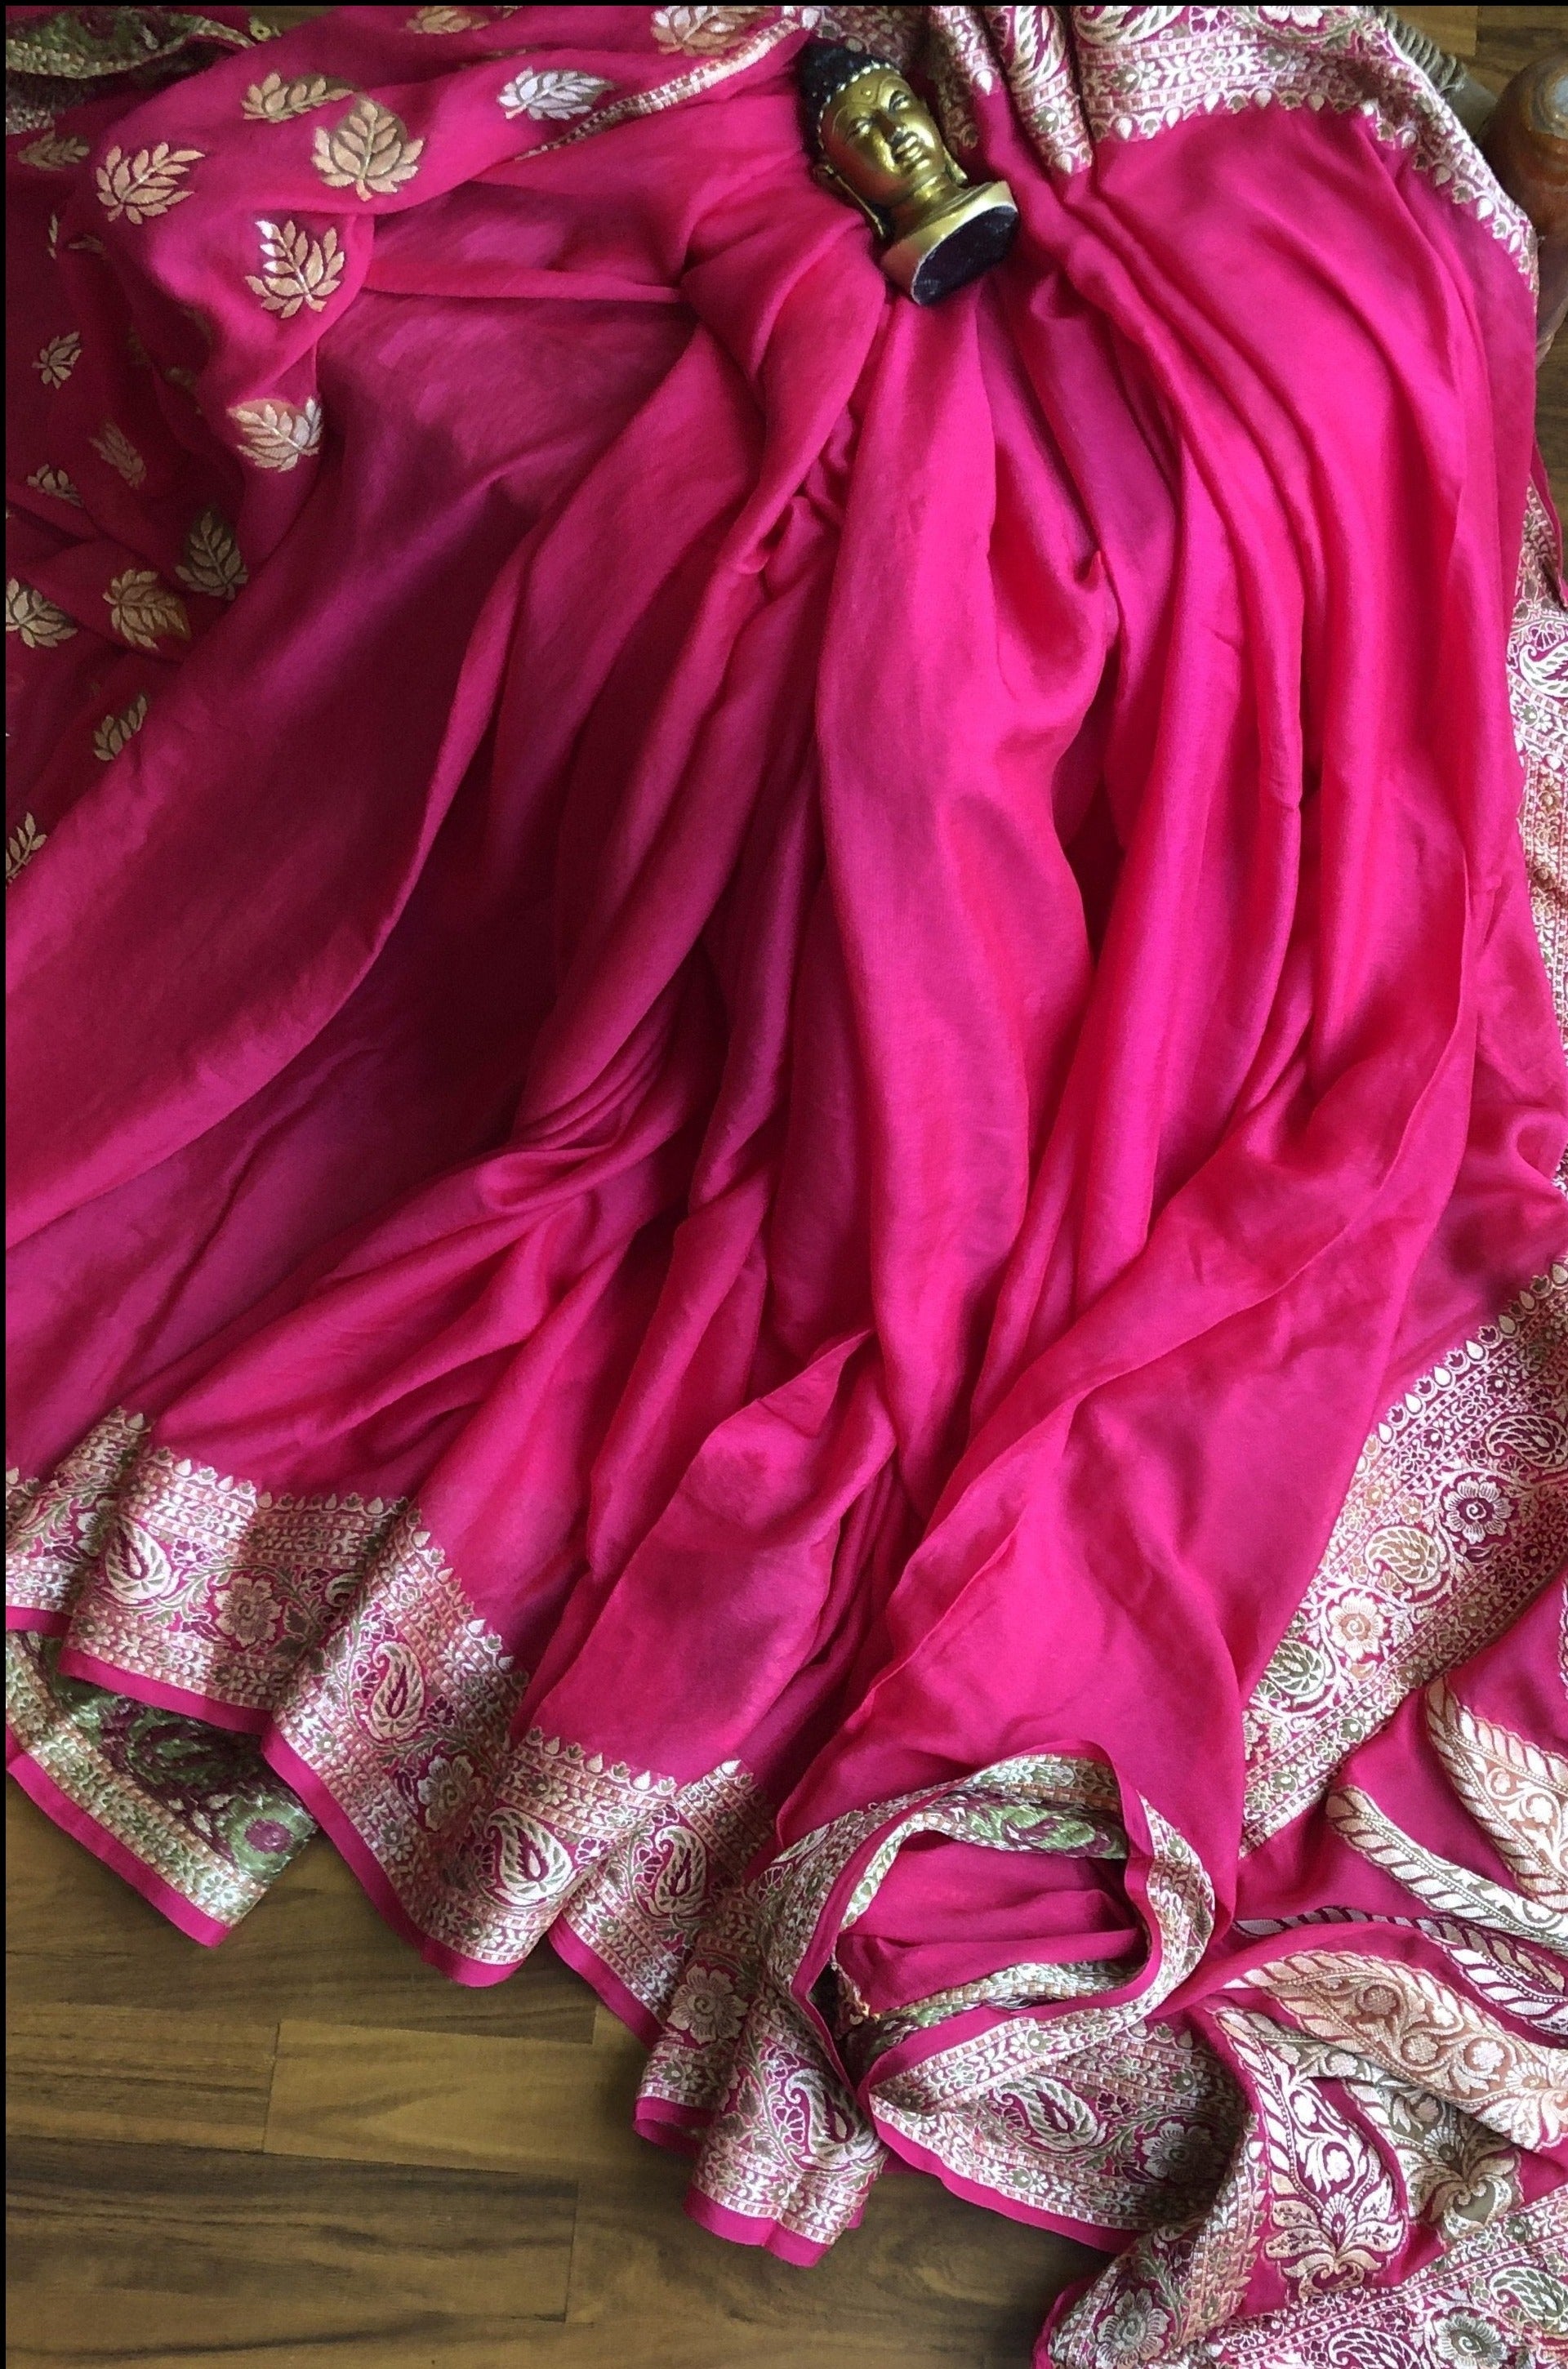 Rani Pink Banrasi Bandhani Traditional Saree